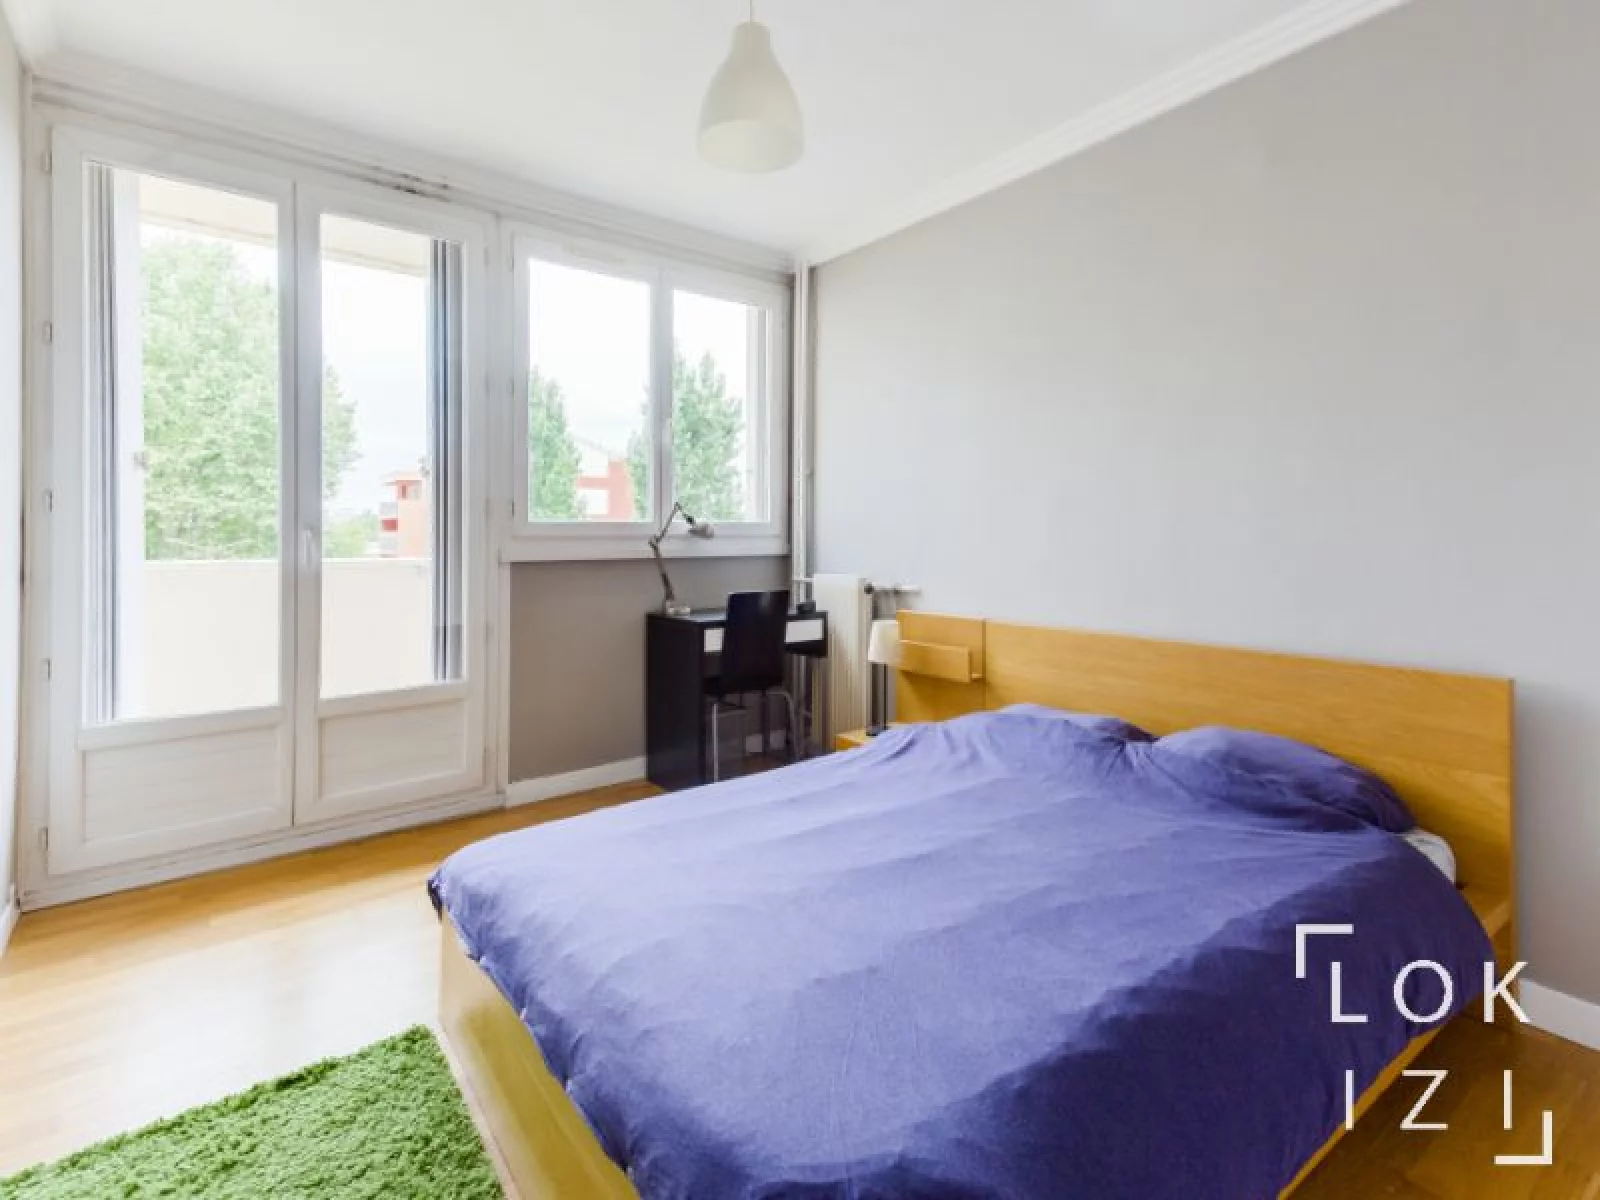 Location appartement meublé 5 pièces 82m² (Toulouse)